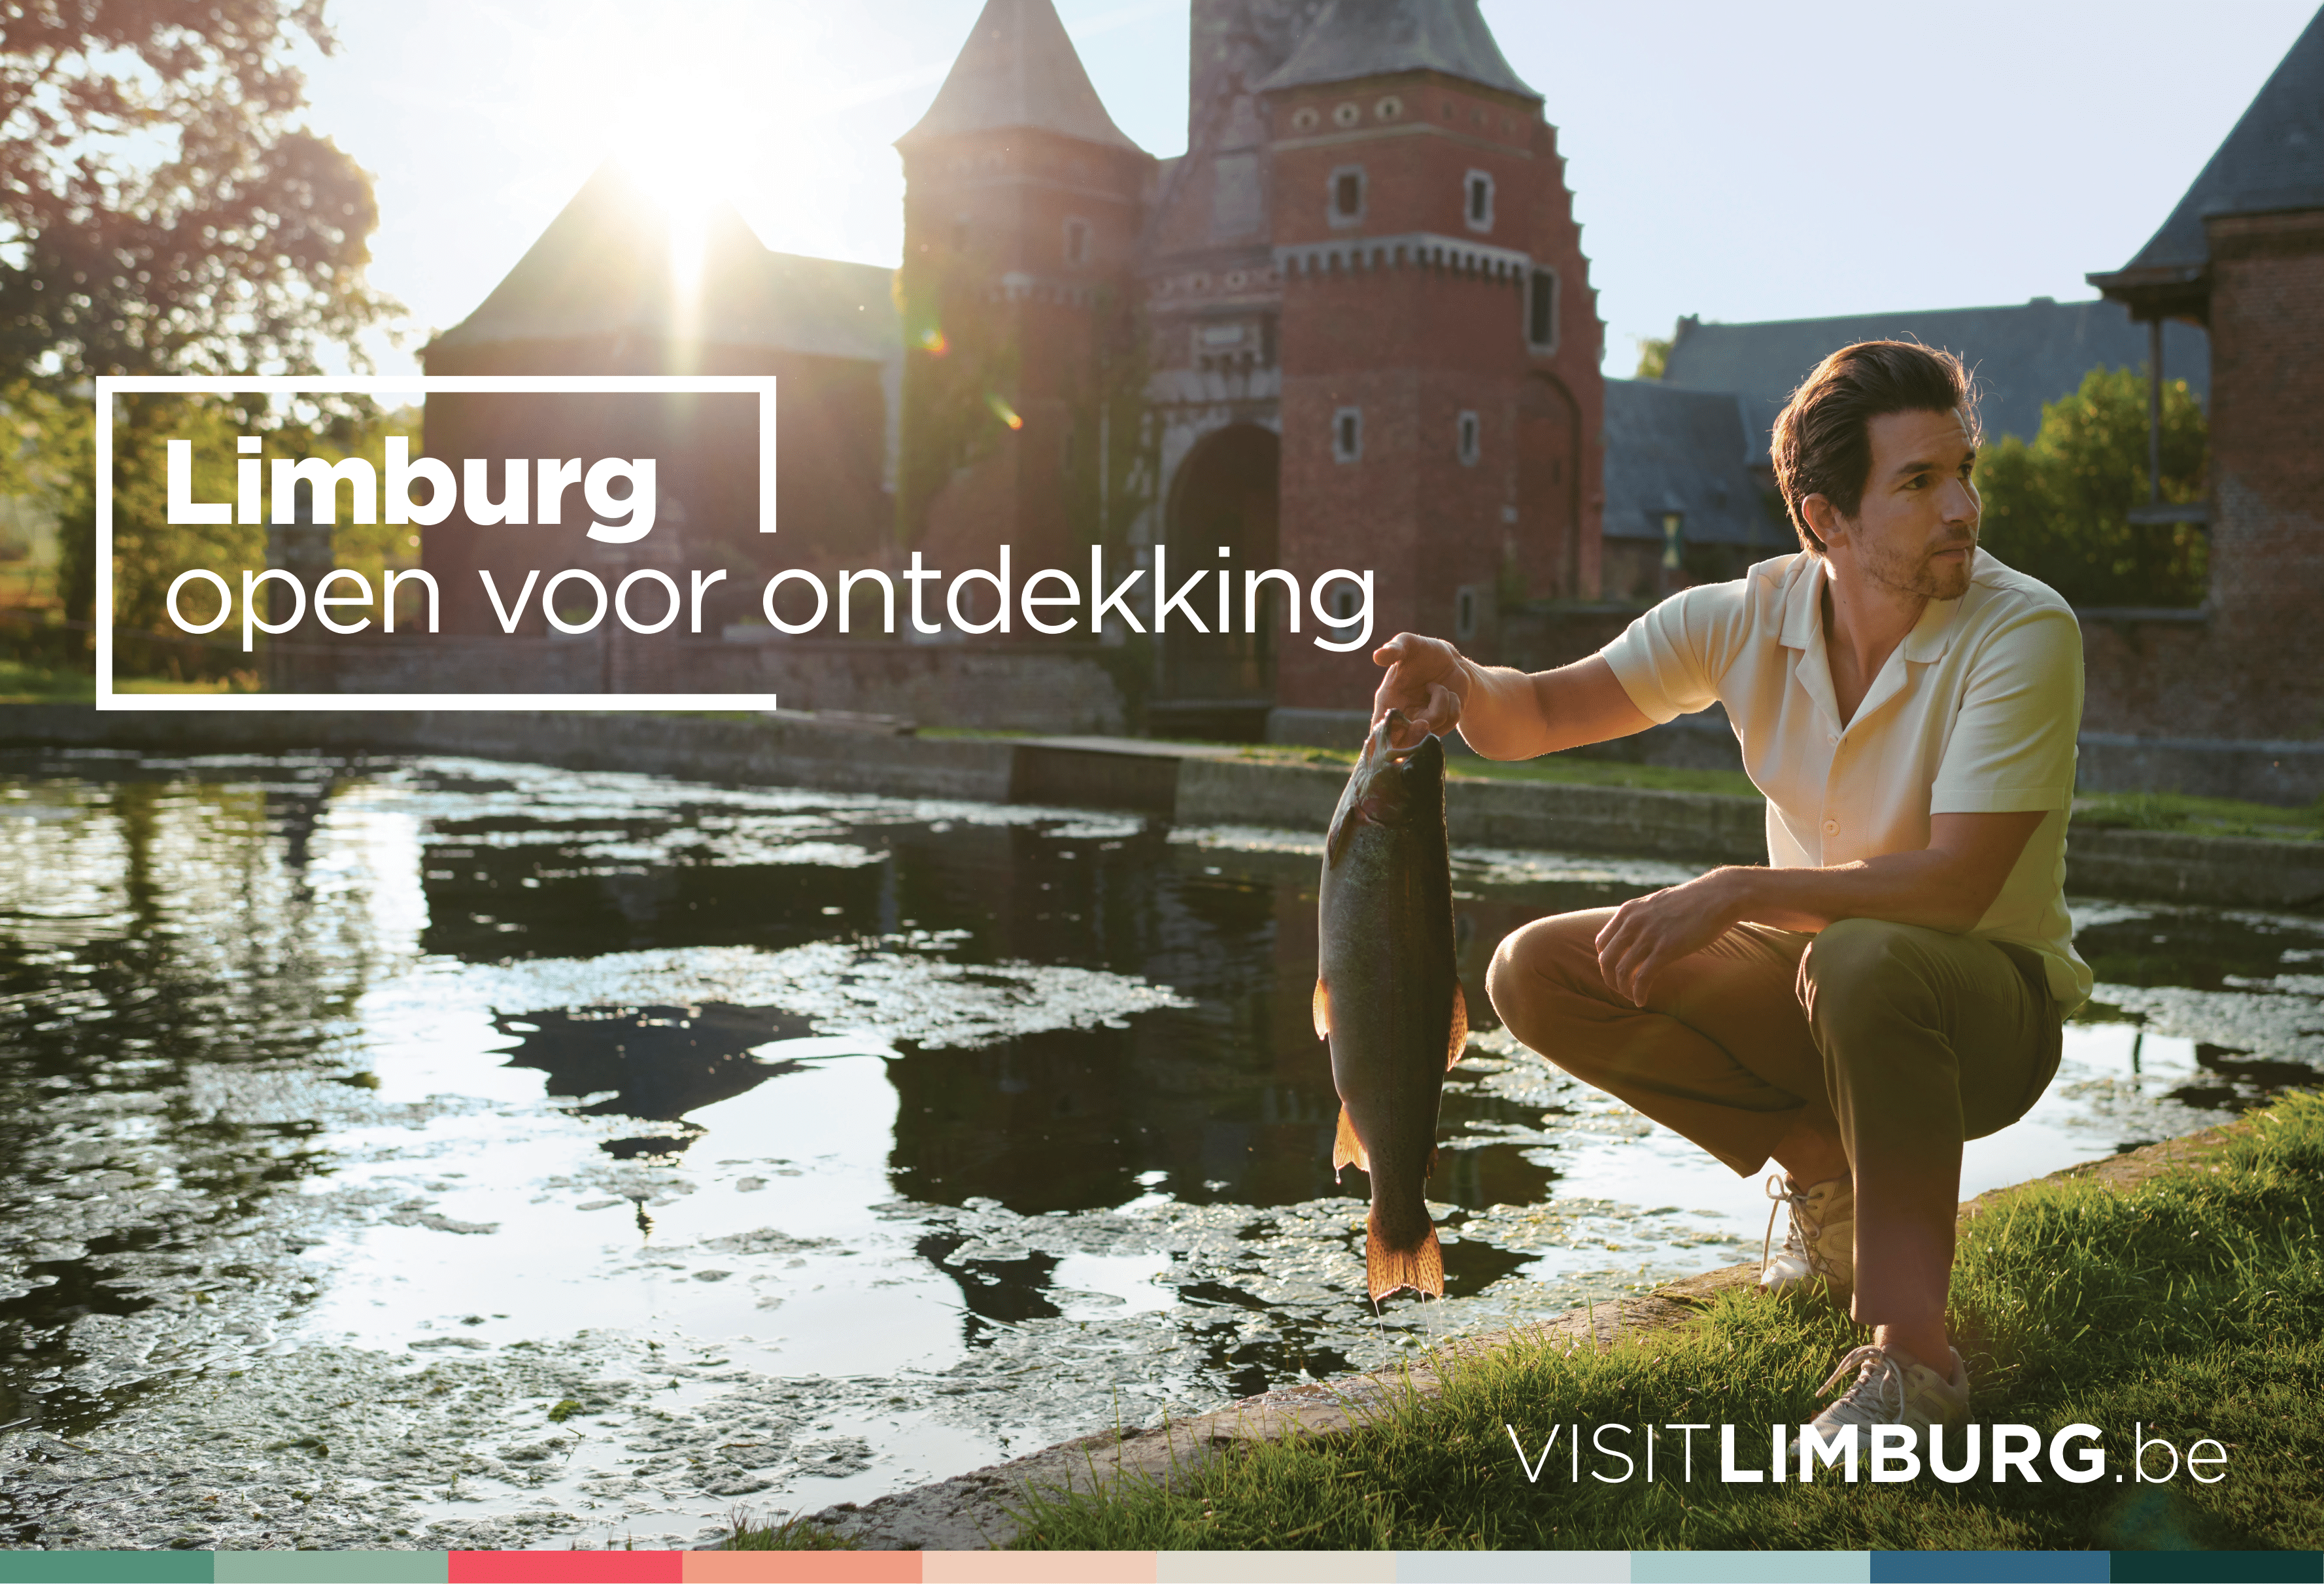 Limburg: open voor ontdekking